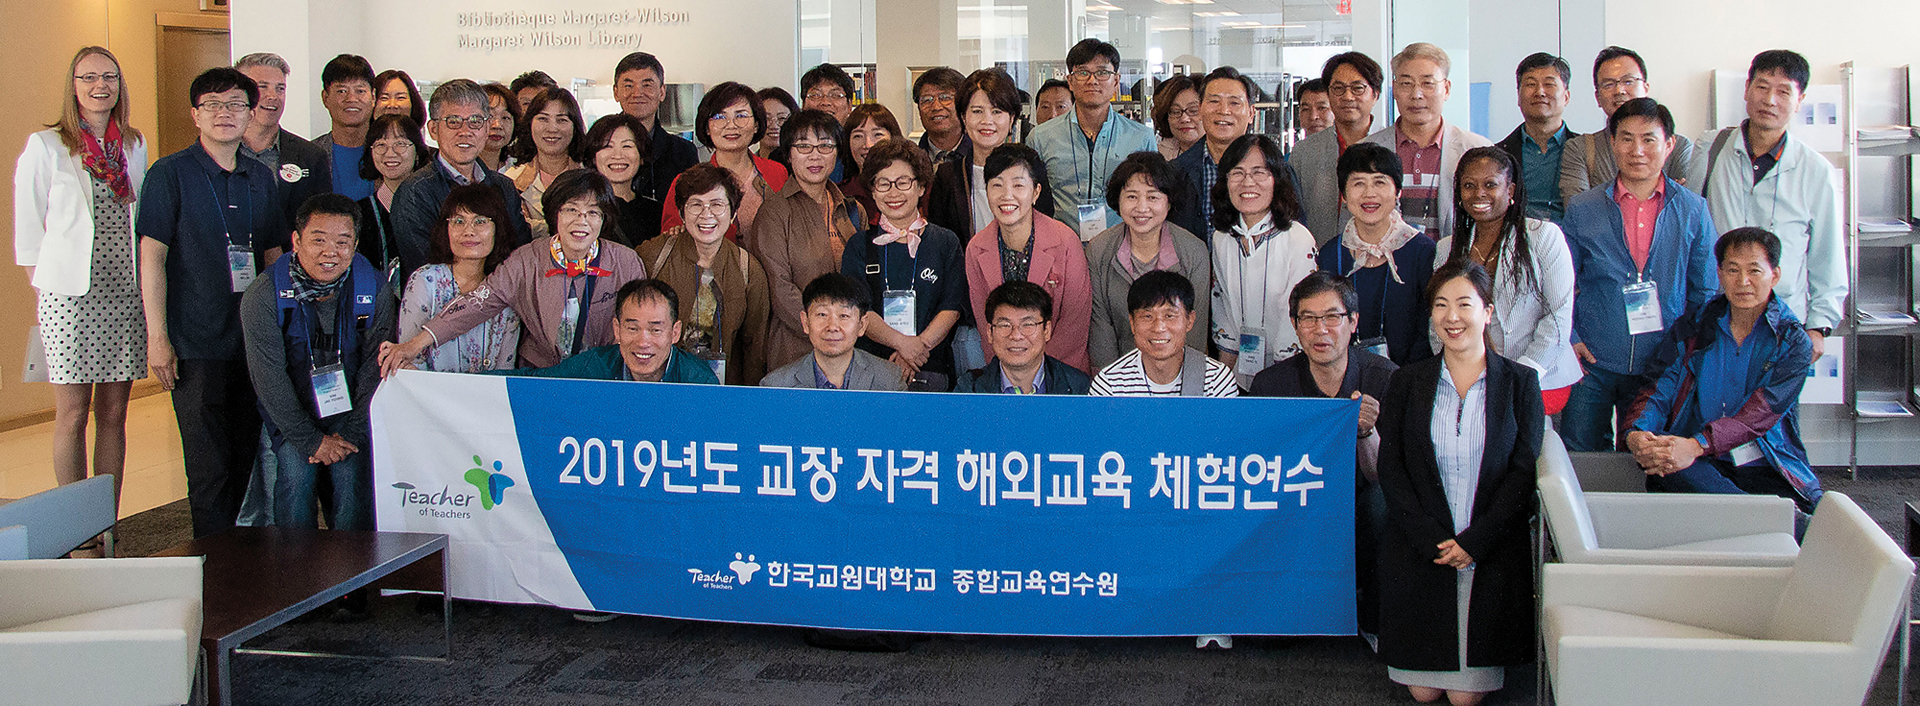 Photo d’un grand groupe de directions d’école coréennes souriant et tenant une bannière sur laquelle figure des caractères coréens.